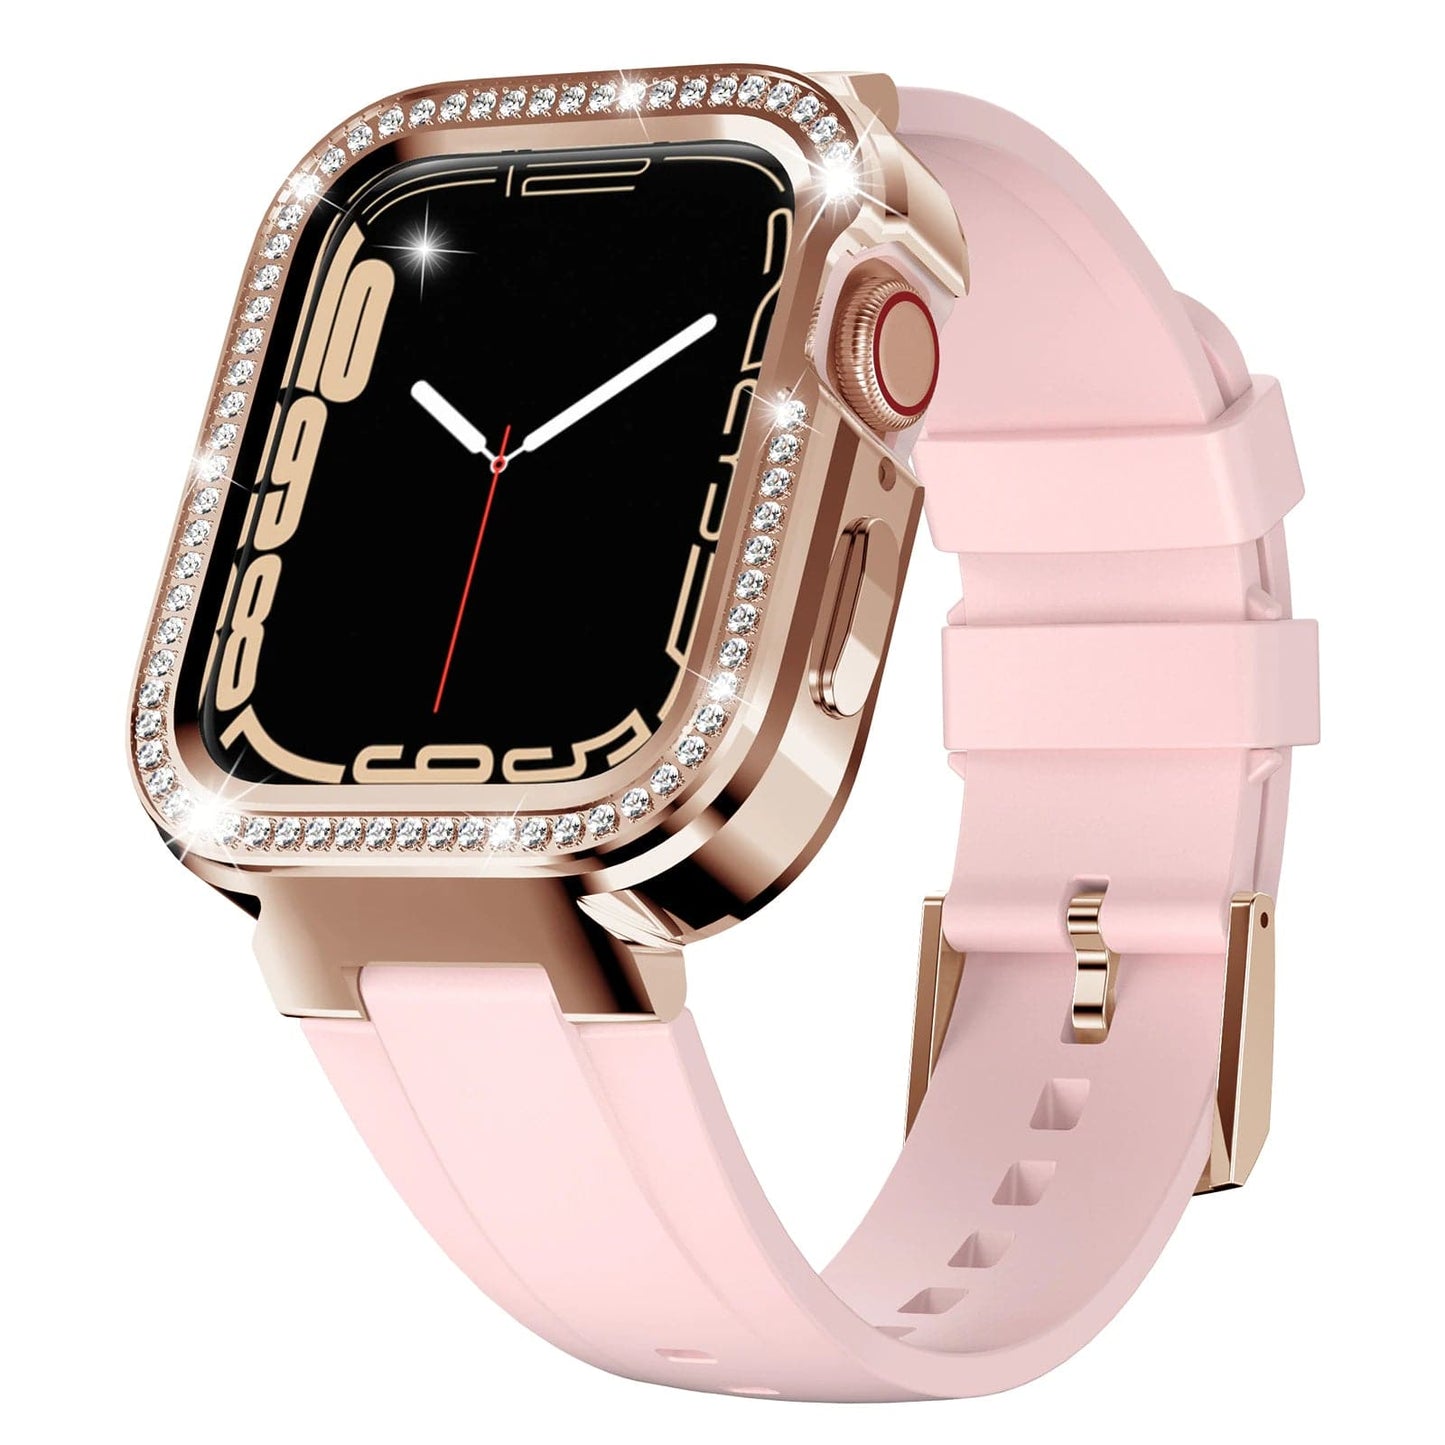 Casey Apple Watch Modification Kit For Women Scrunchapples 40mm Pink 